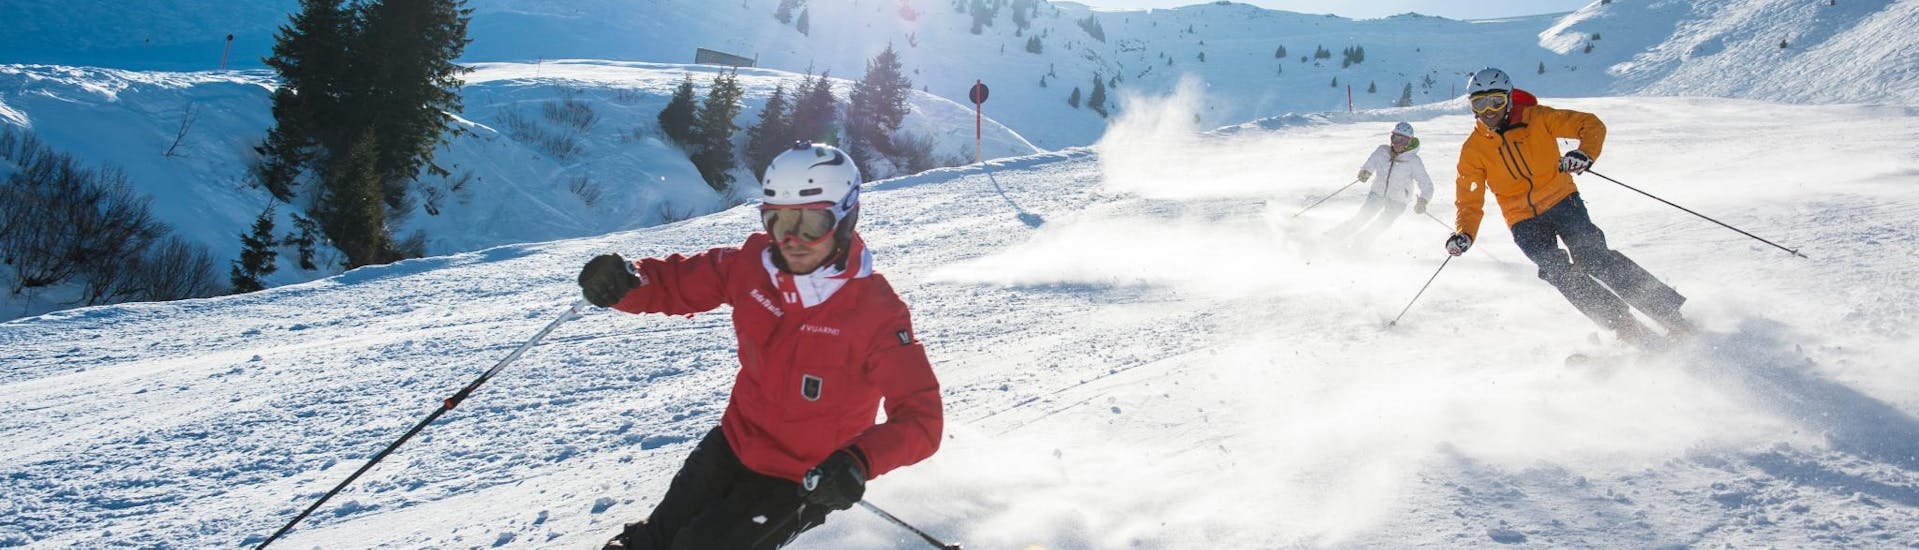 Bij de skilessen voor volwassenen - met ervaring laat een skileraar van de skischool Skischule Kitzbühel Rote Teufel zijn groep de juiste skitechniek zien.